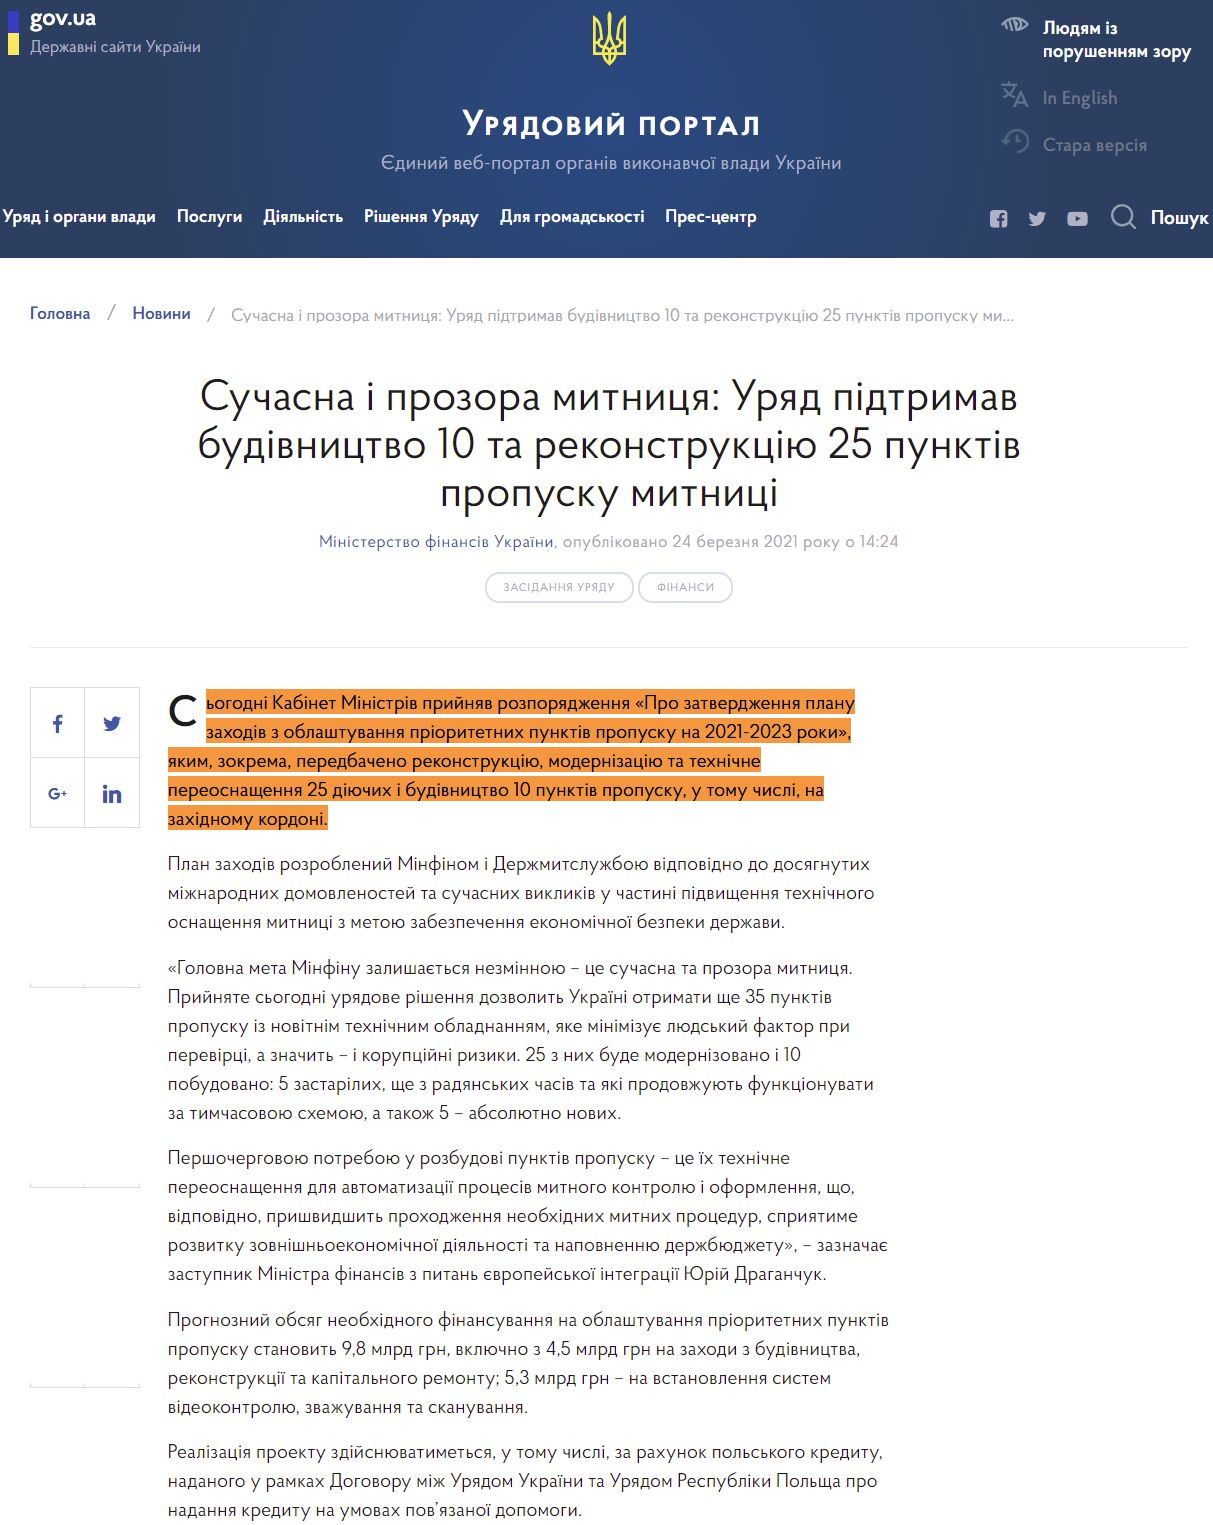 https://www.kmu.gov.ua/news/suchasna-i-prozora-mitnicya-uryad-pidtrimav-budivnictvo-10-ti-ta-rekonstrukciyu-25-punktiv-propusku-mitnici